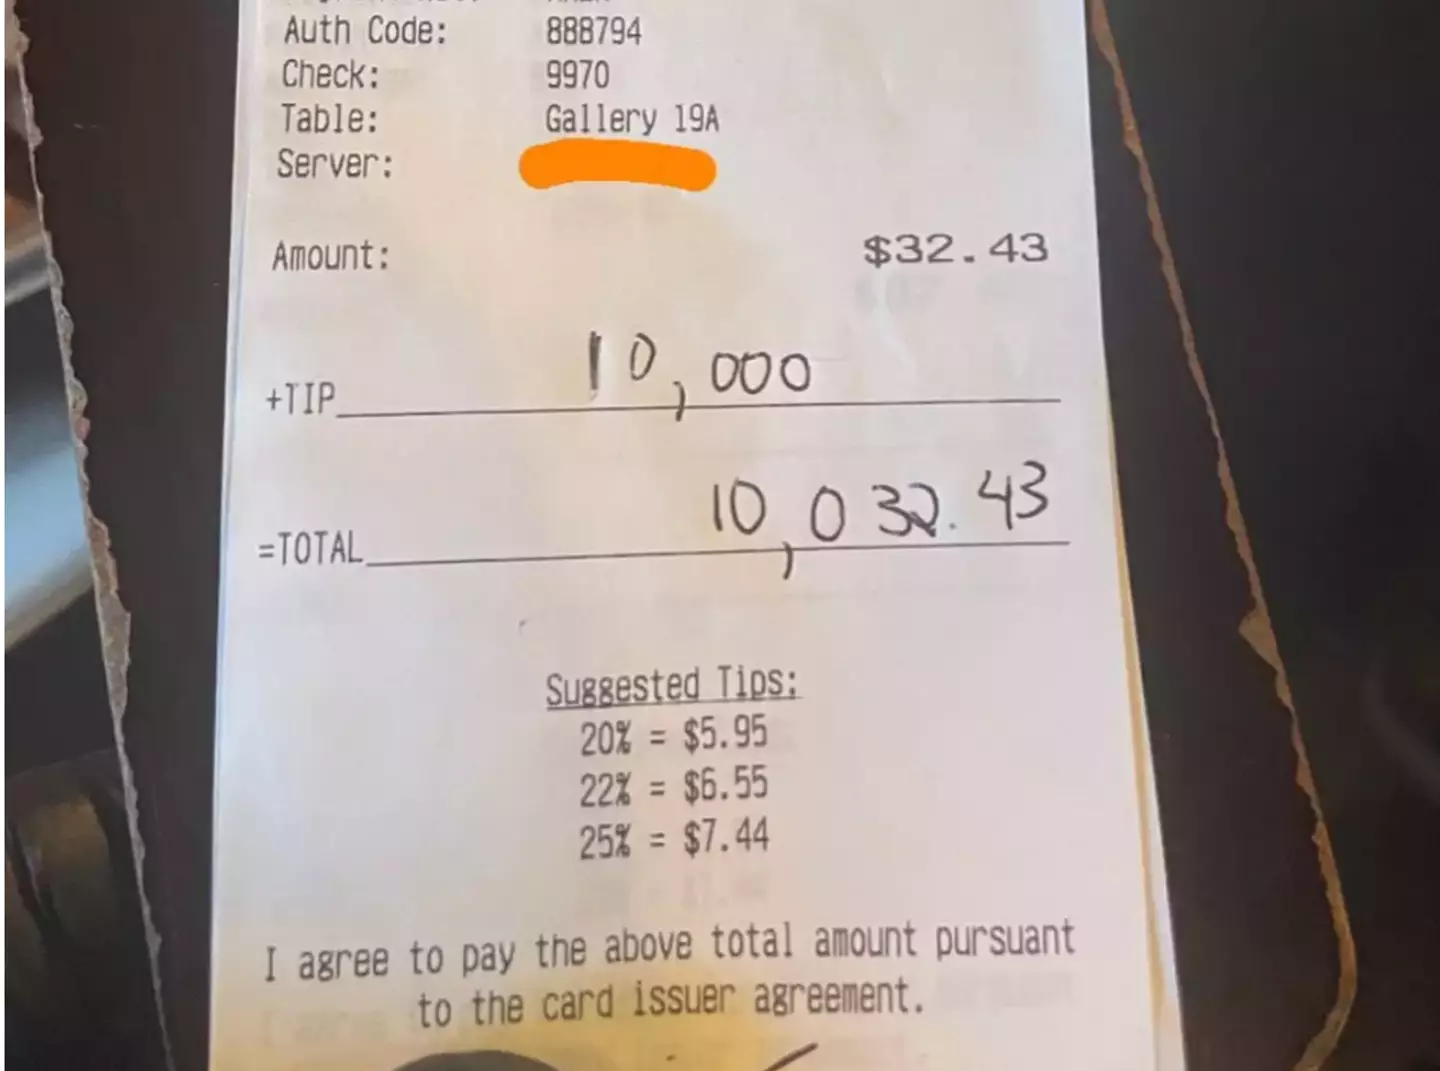 The diner left a $10,000 tip.